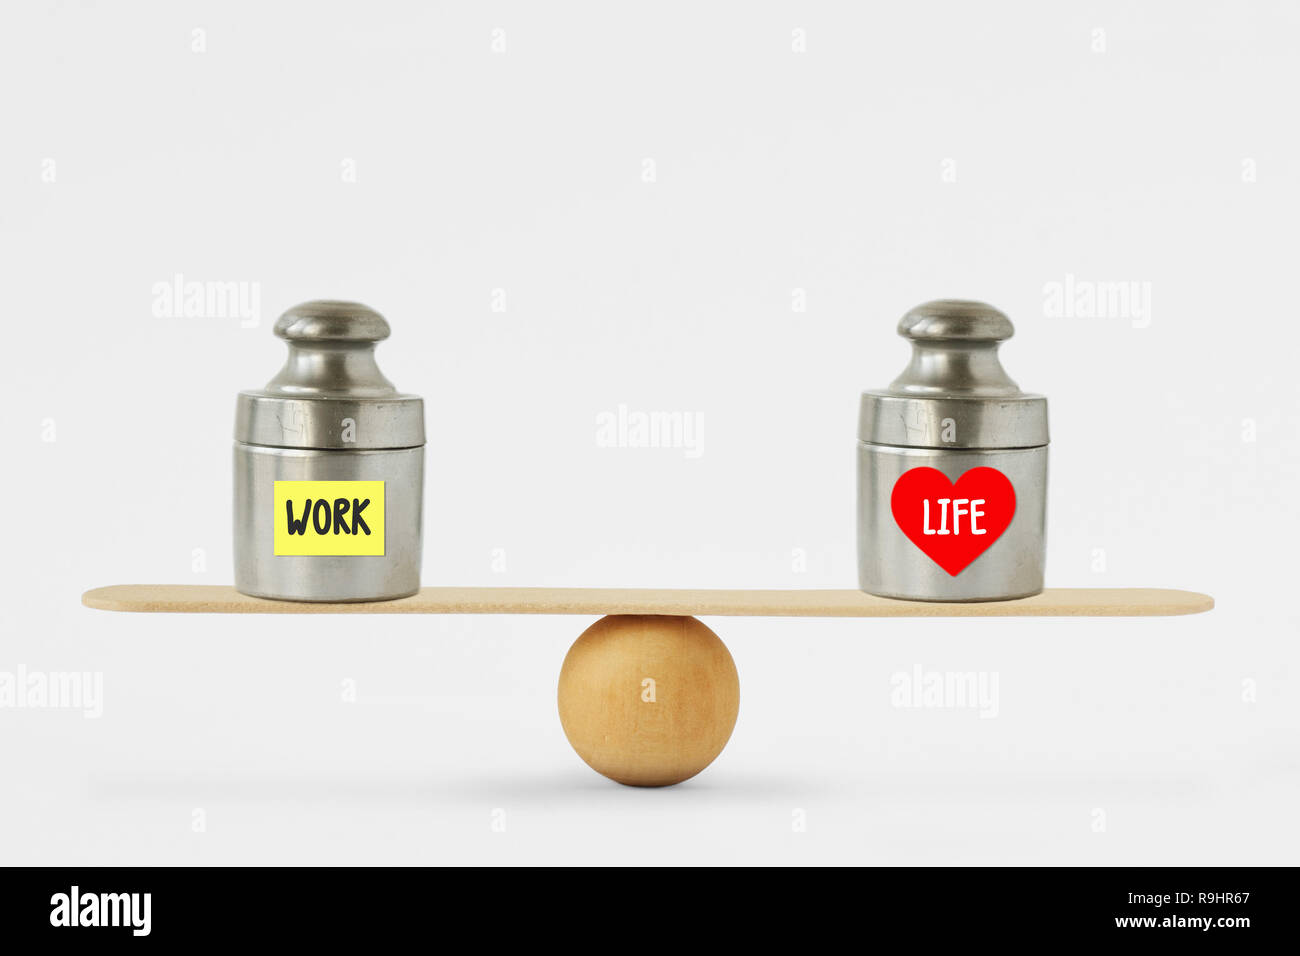 Gewichte mit den Worten die Arbeit und das Leben auf dem Papier Hinweis auf Balance Scale geschrieben - Konzept der Balance zwischen Arbeit und Leben Stockfoto